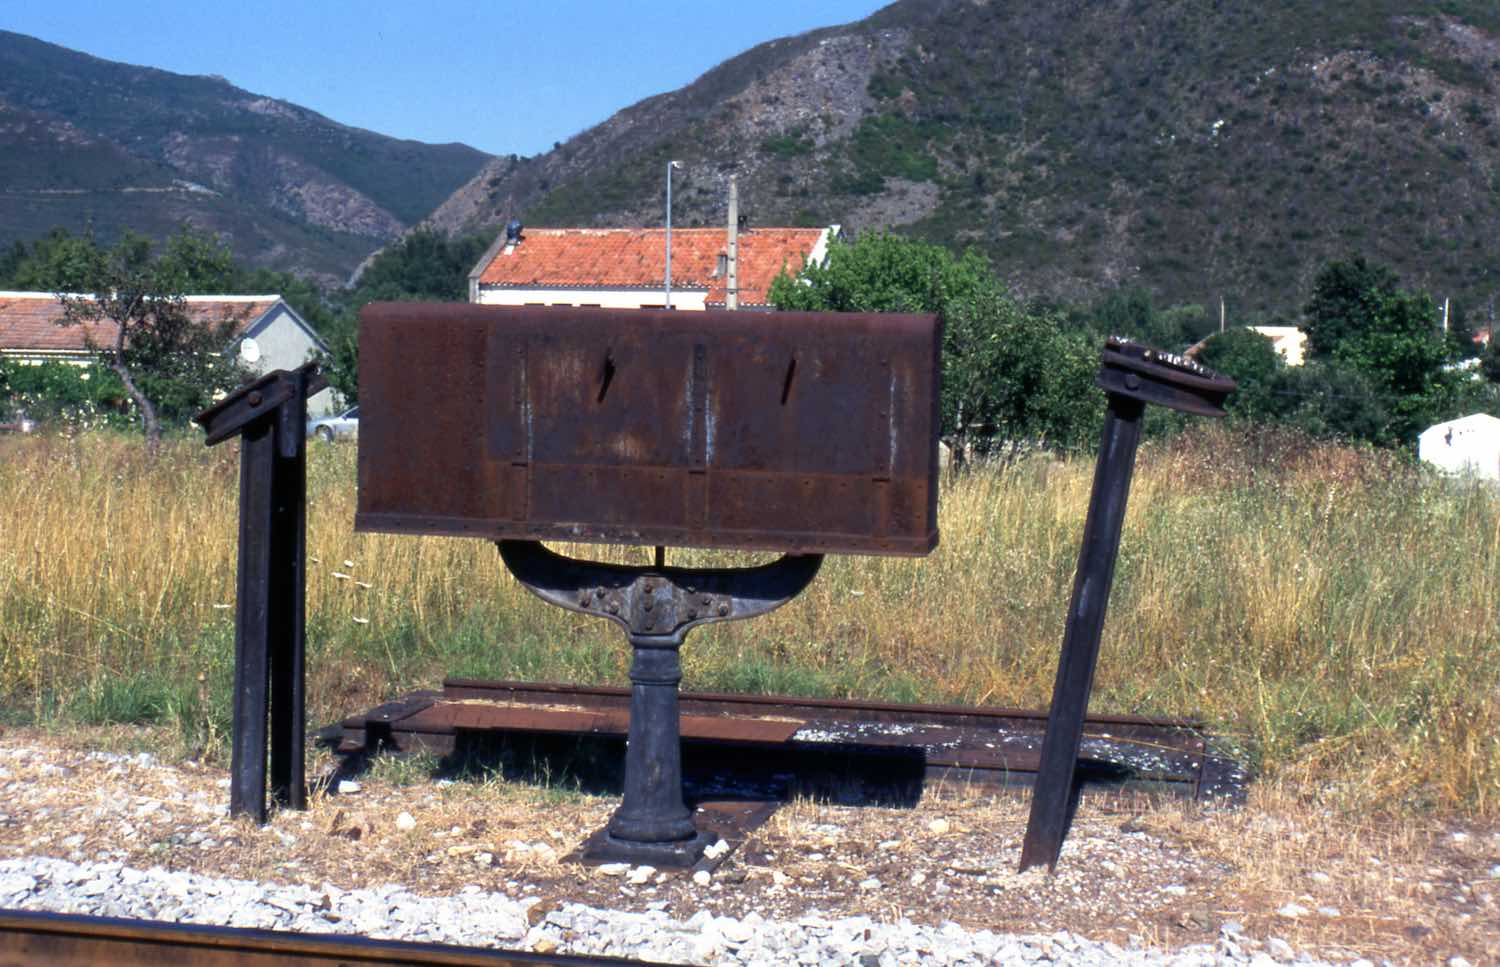 weighing machine at Ponte Leccia